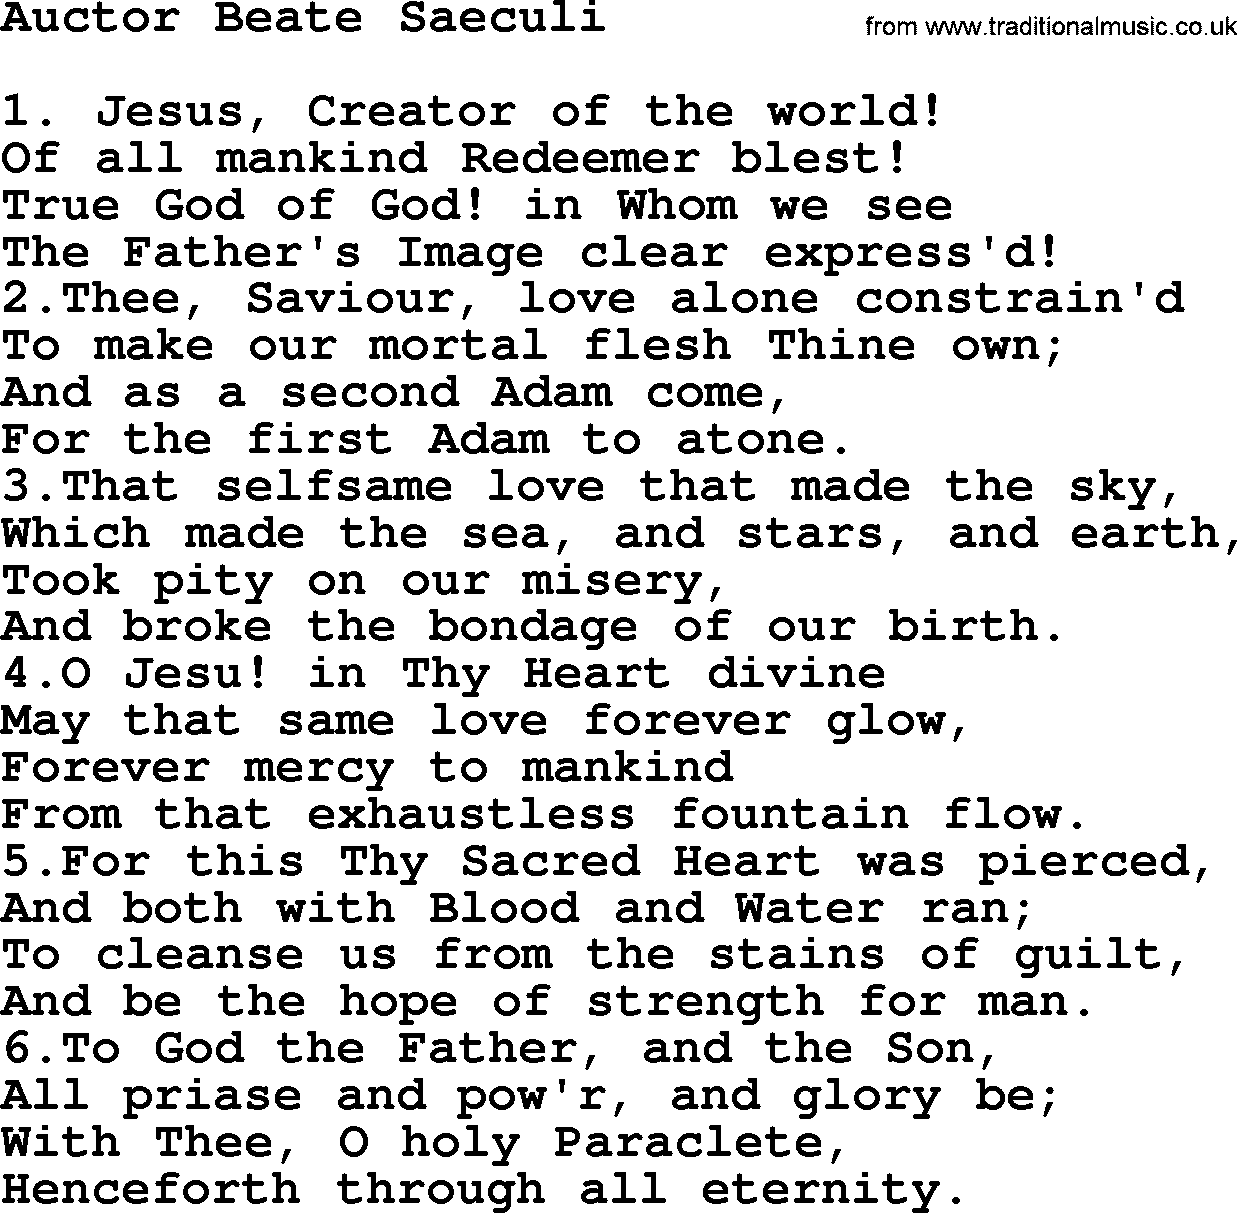 Catholic Hymn: Auctor Beate Saeculi lyrics with PDF